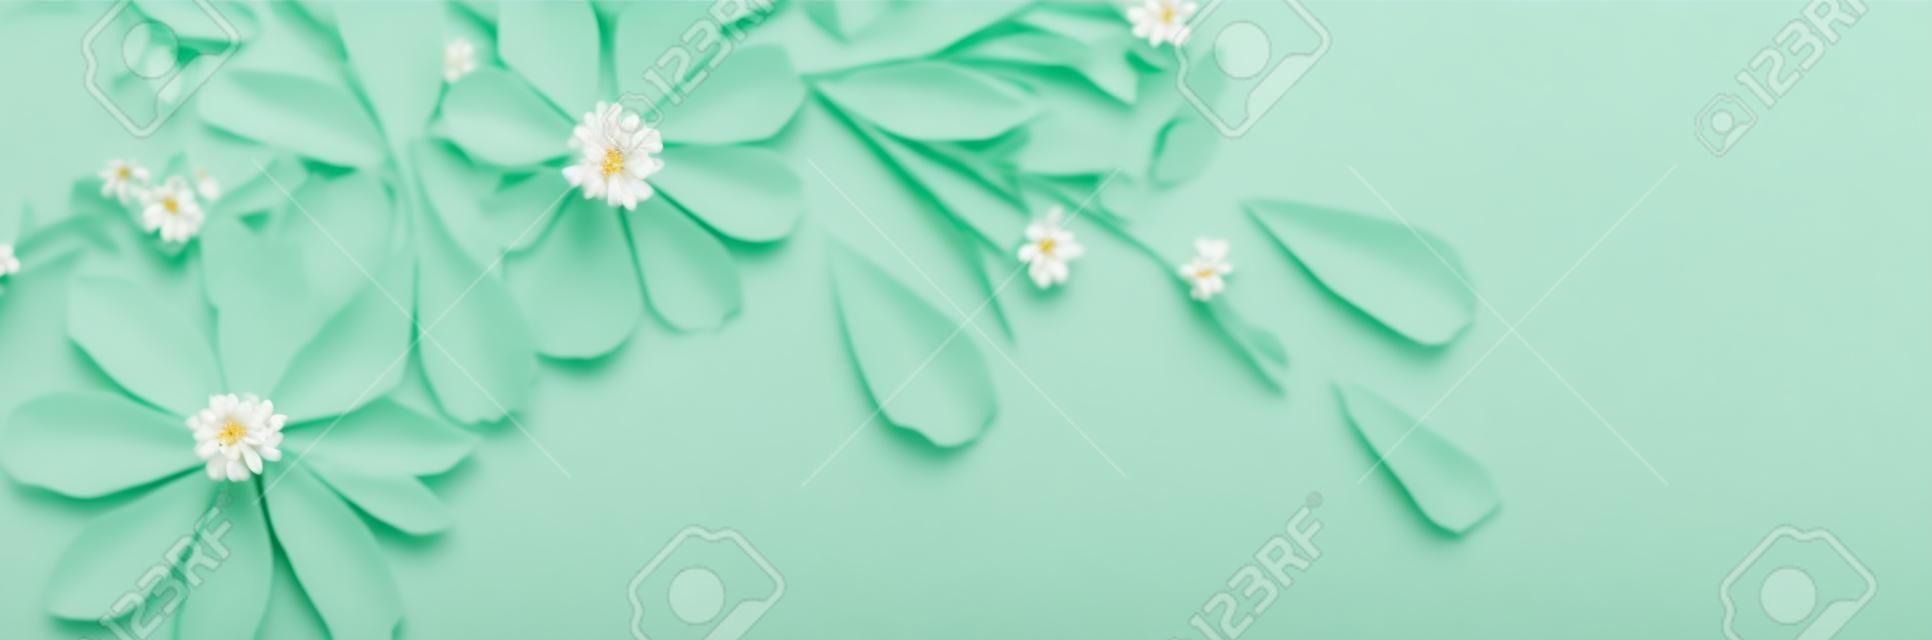 białe kwiaty na zielonym tle papieru